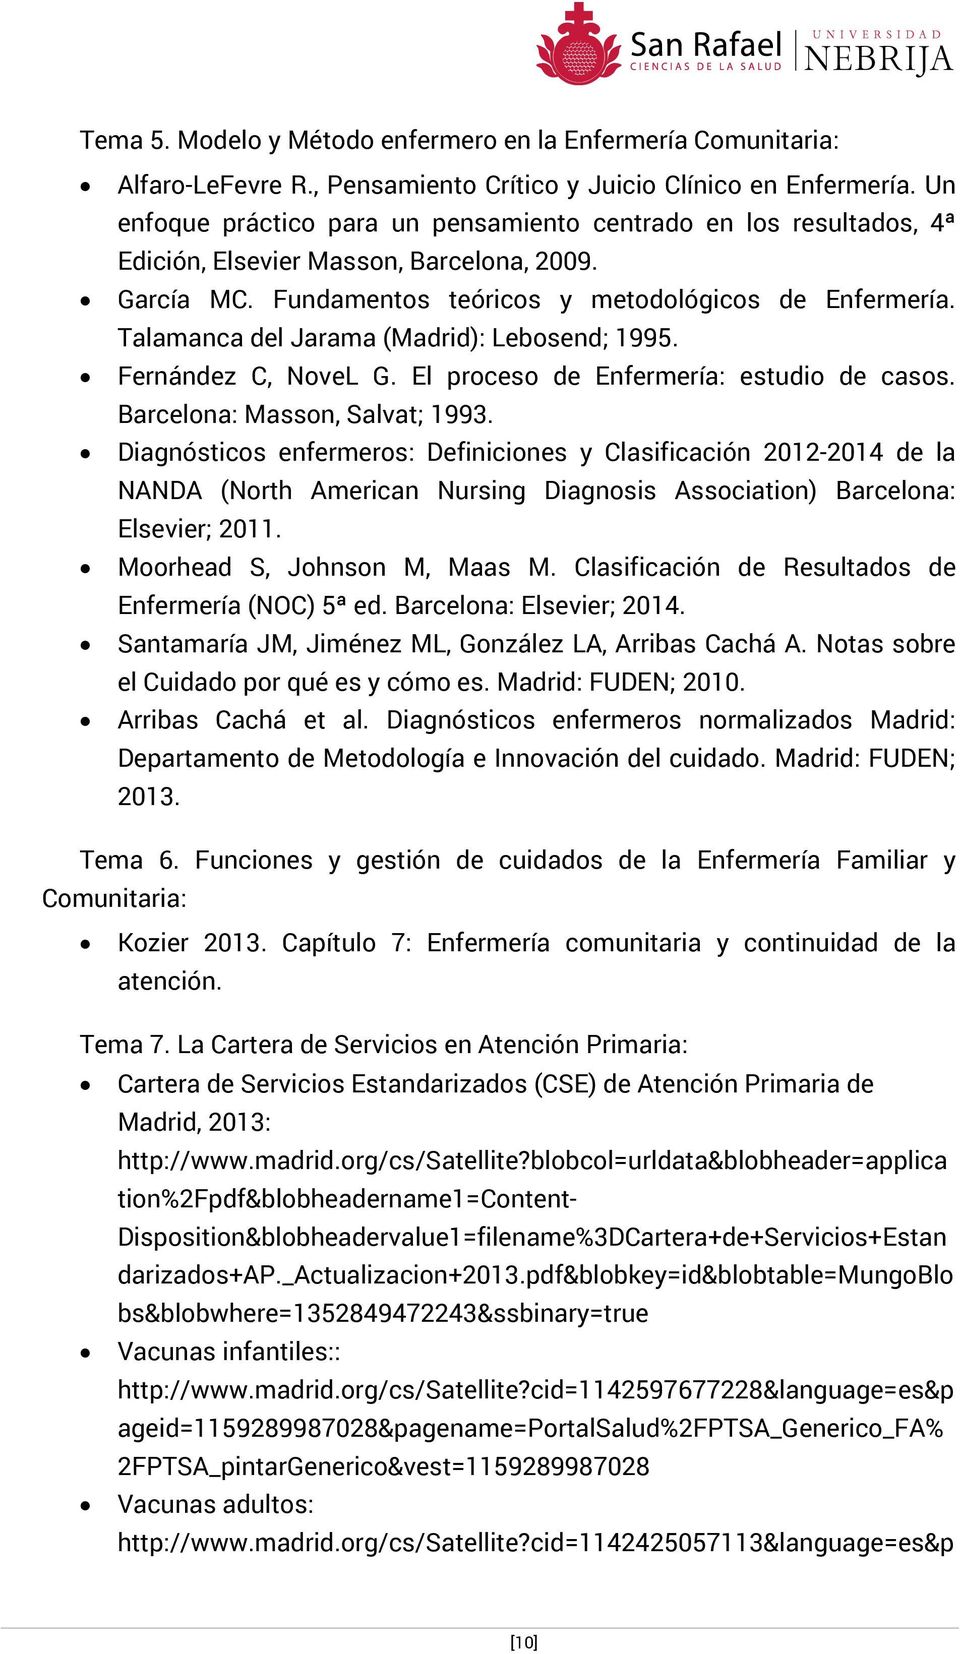 Talamanca del Jarama (Madrid): Lebosend; 1995. Fernández C, NoveL G. El proceso de Enfermería: estudio de casos. Barcelona: Masson, Salvat; 1993.